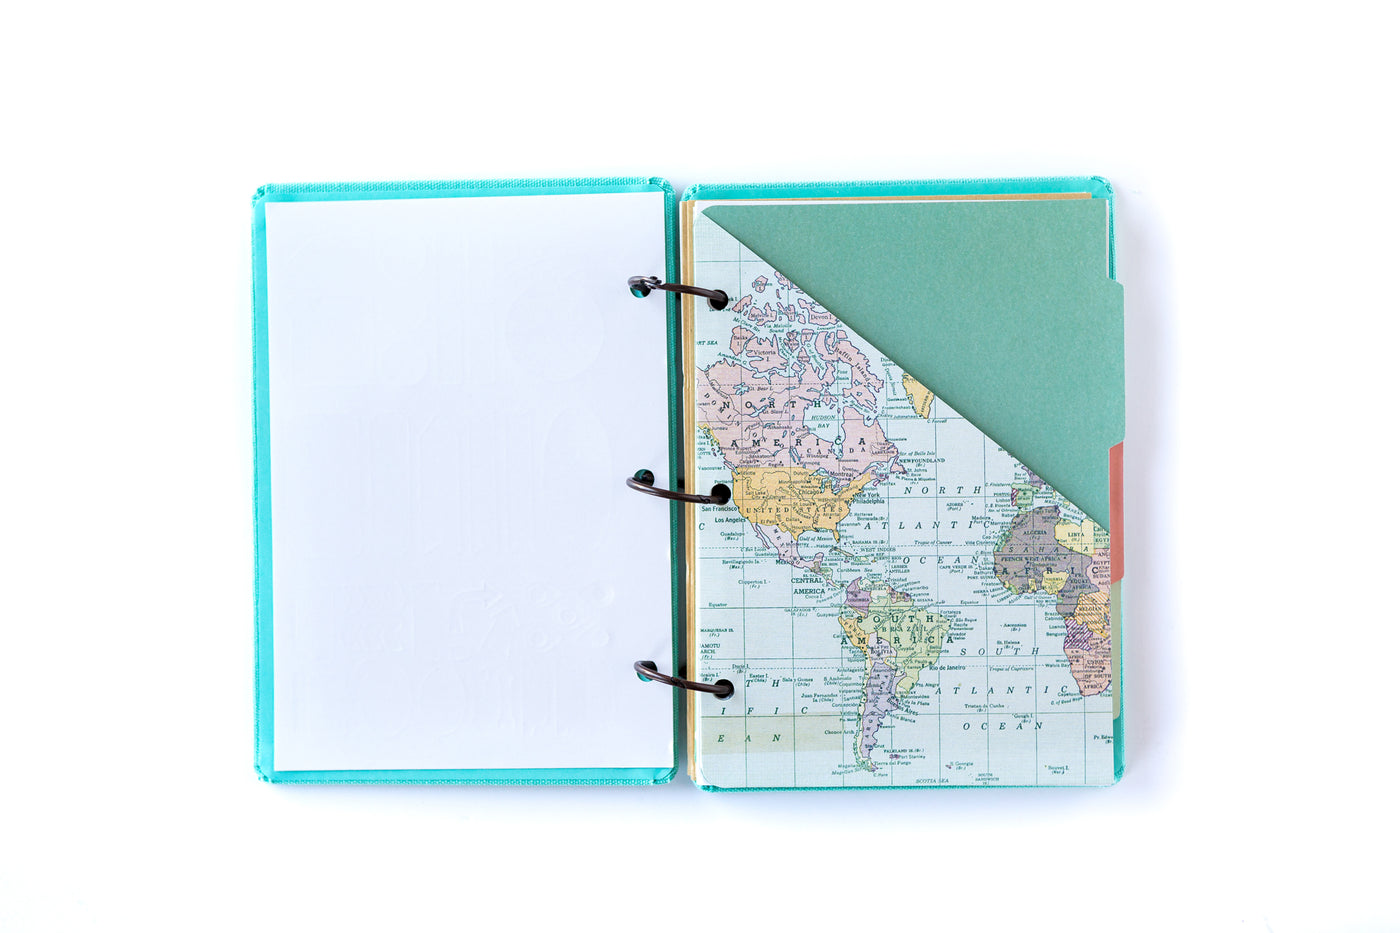 Travel Journal Kit